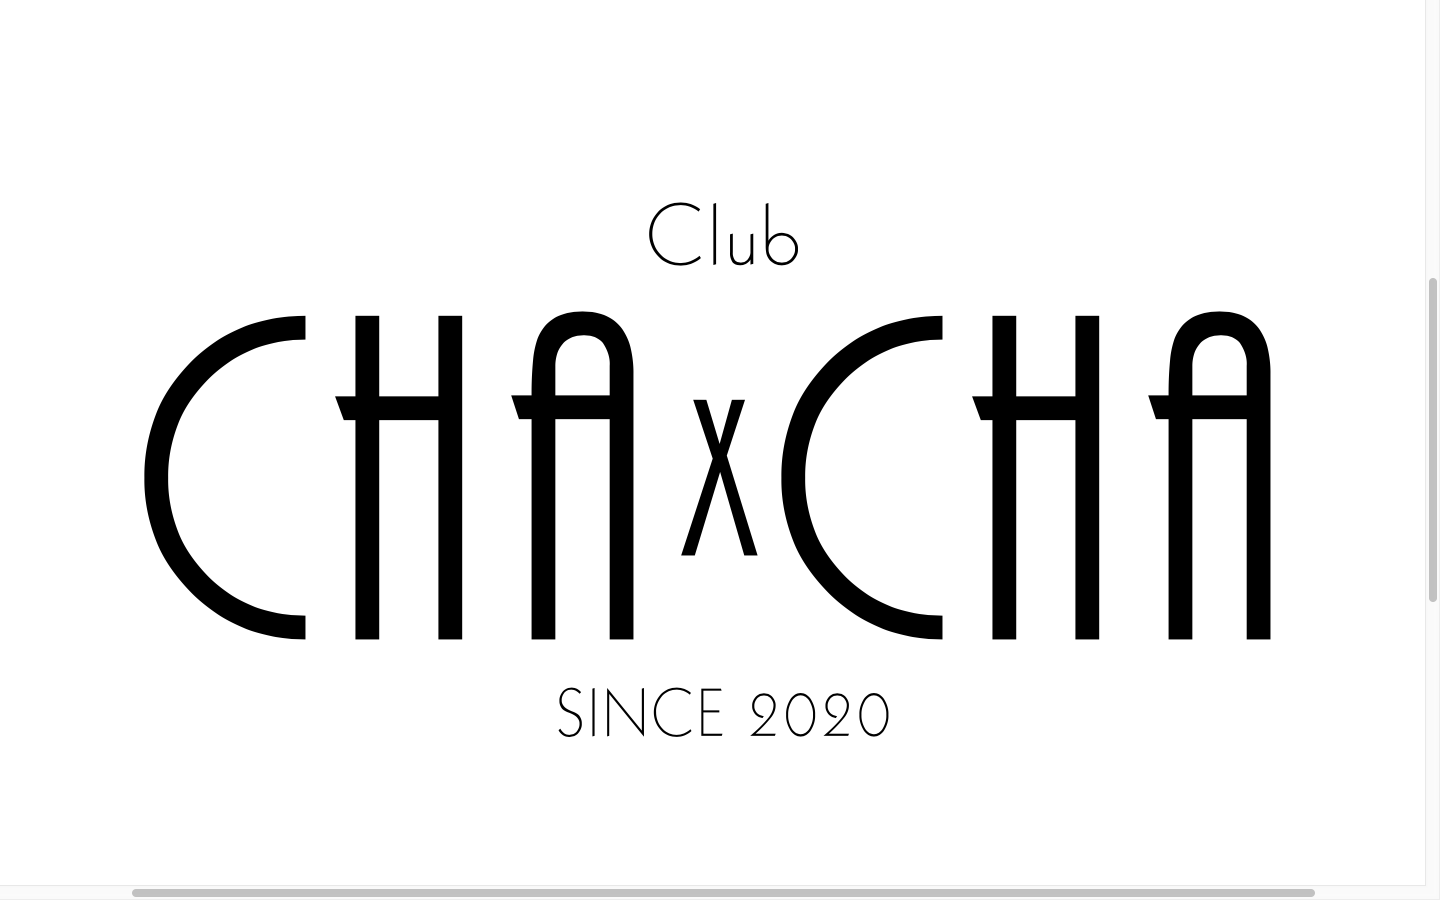 club CHACHA チャチャ